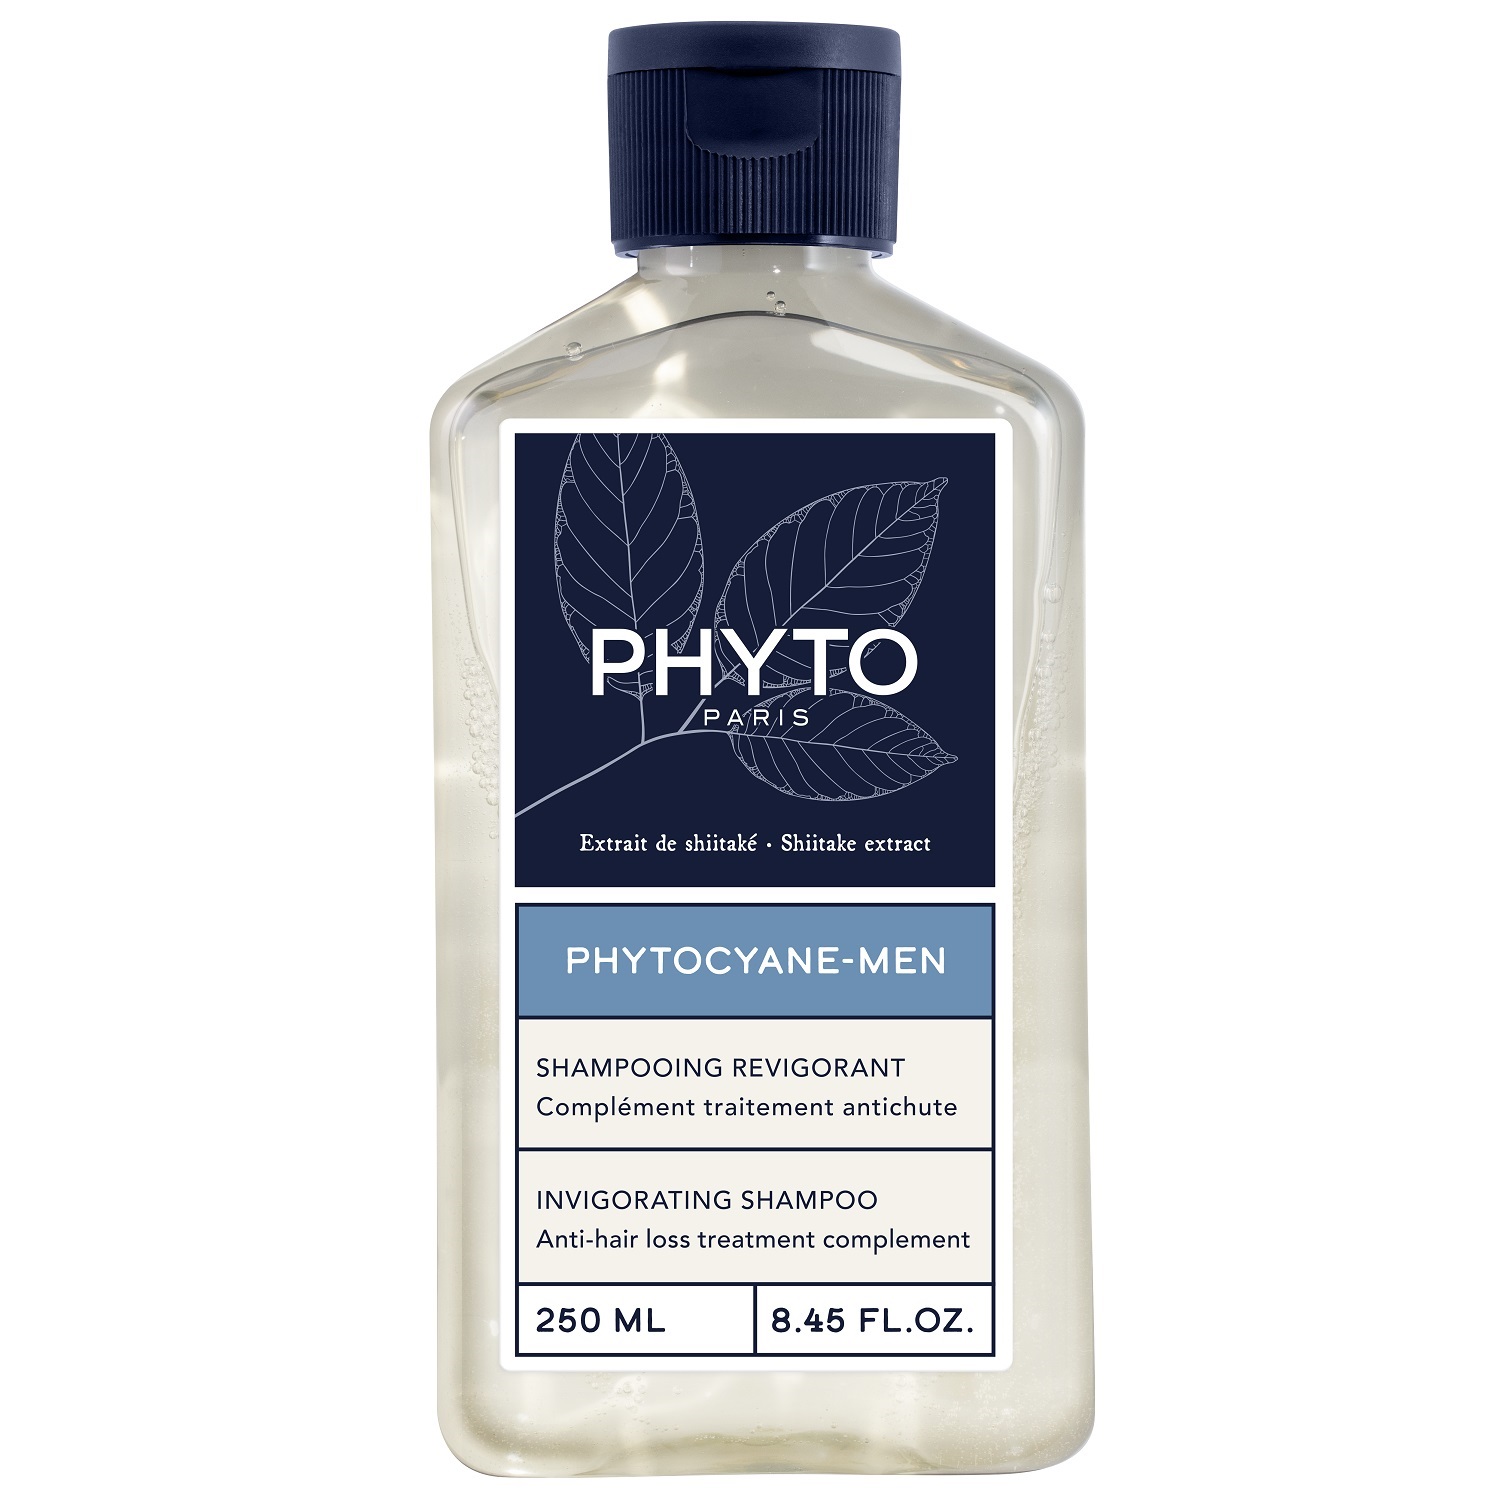 Phyto Мужской укрепляющий шампунь для волос, 250 мл (Phyto, Phytocyane) шампунь для волос укрепляющий phytocyane phyto фито фл 250мл